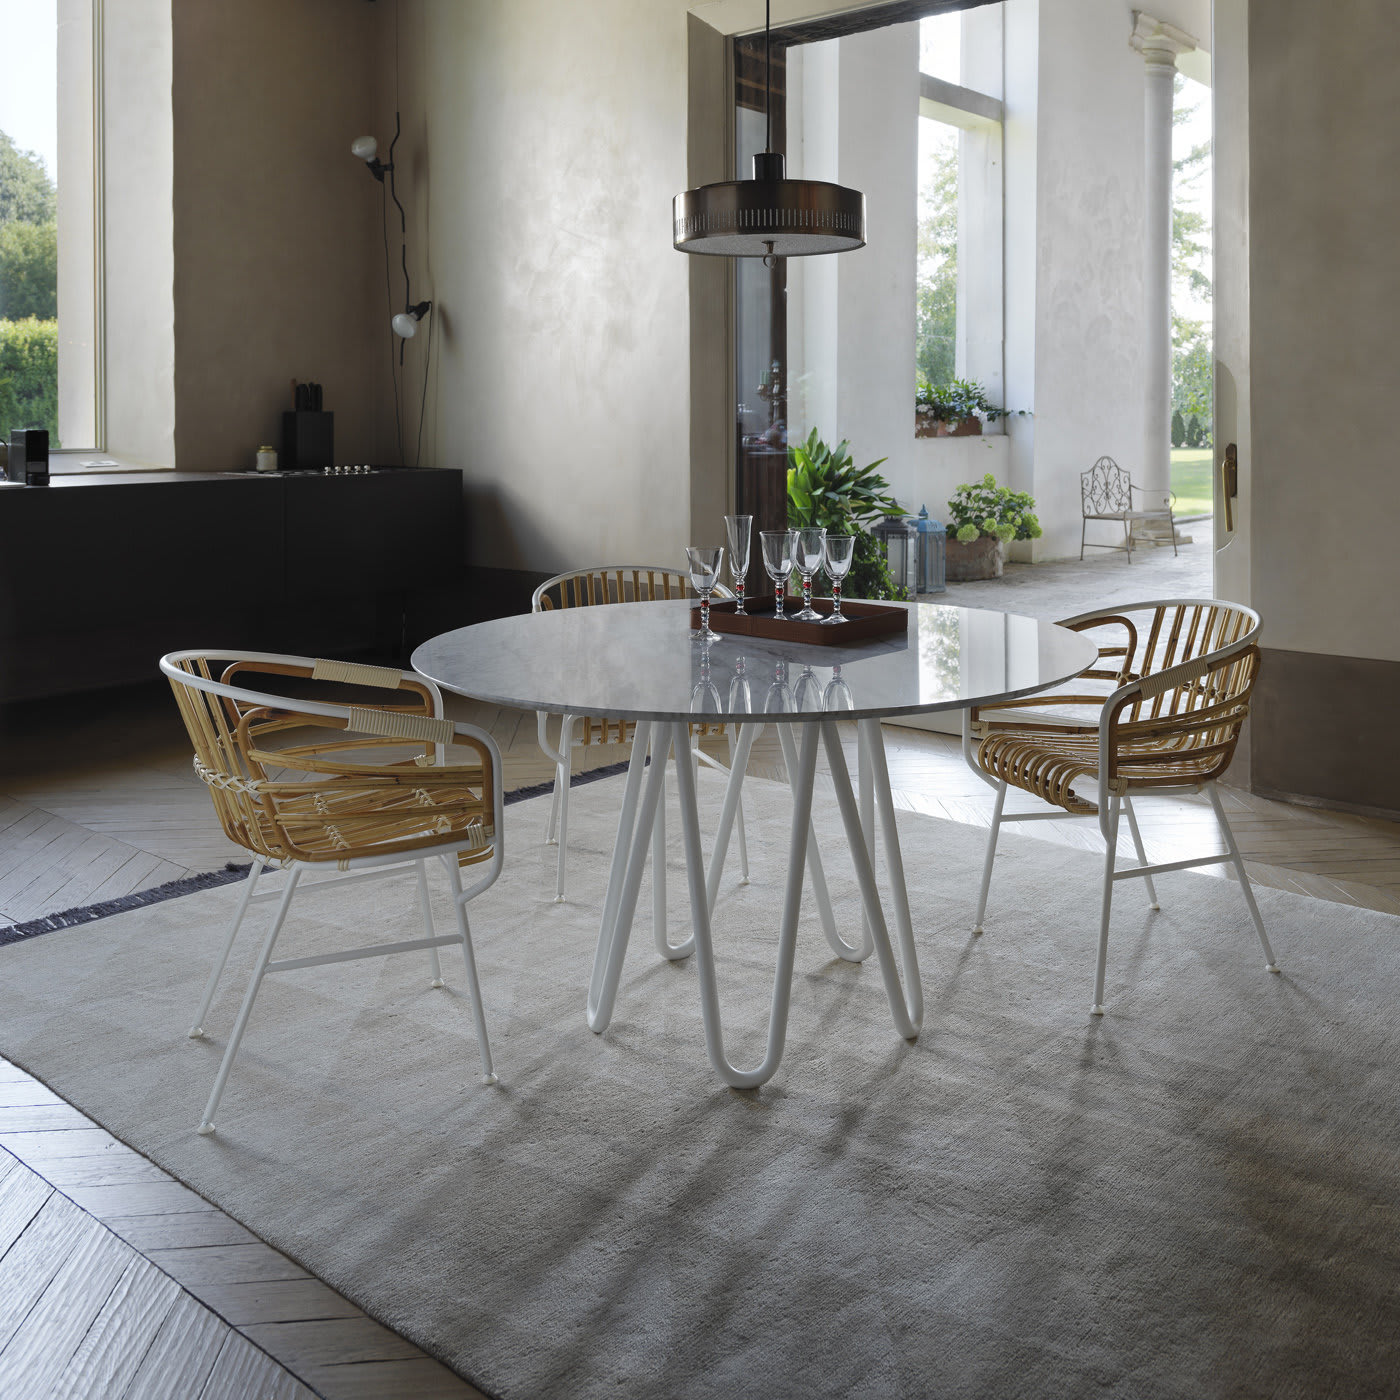 Meduse Dining Table with Carrara Marble Top by GamFratesi - Casamania